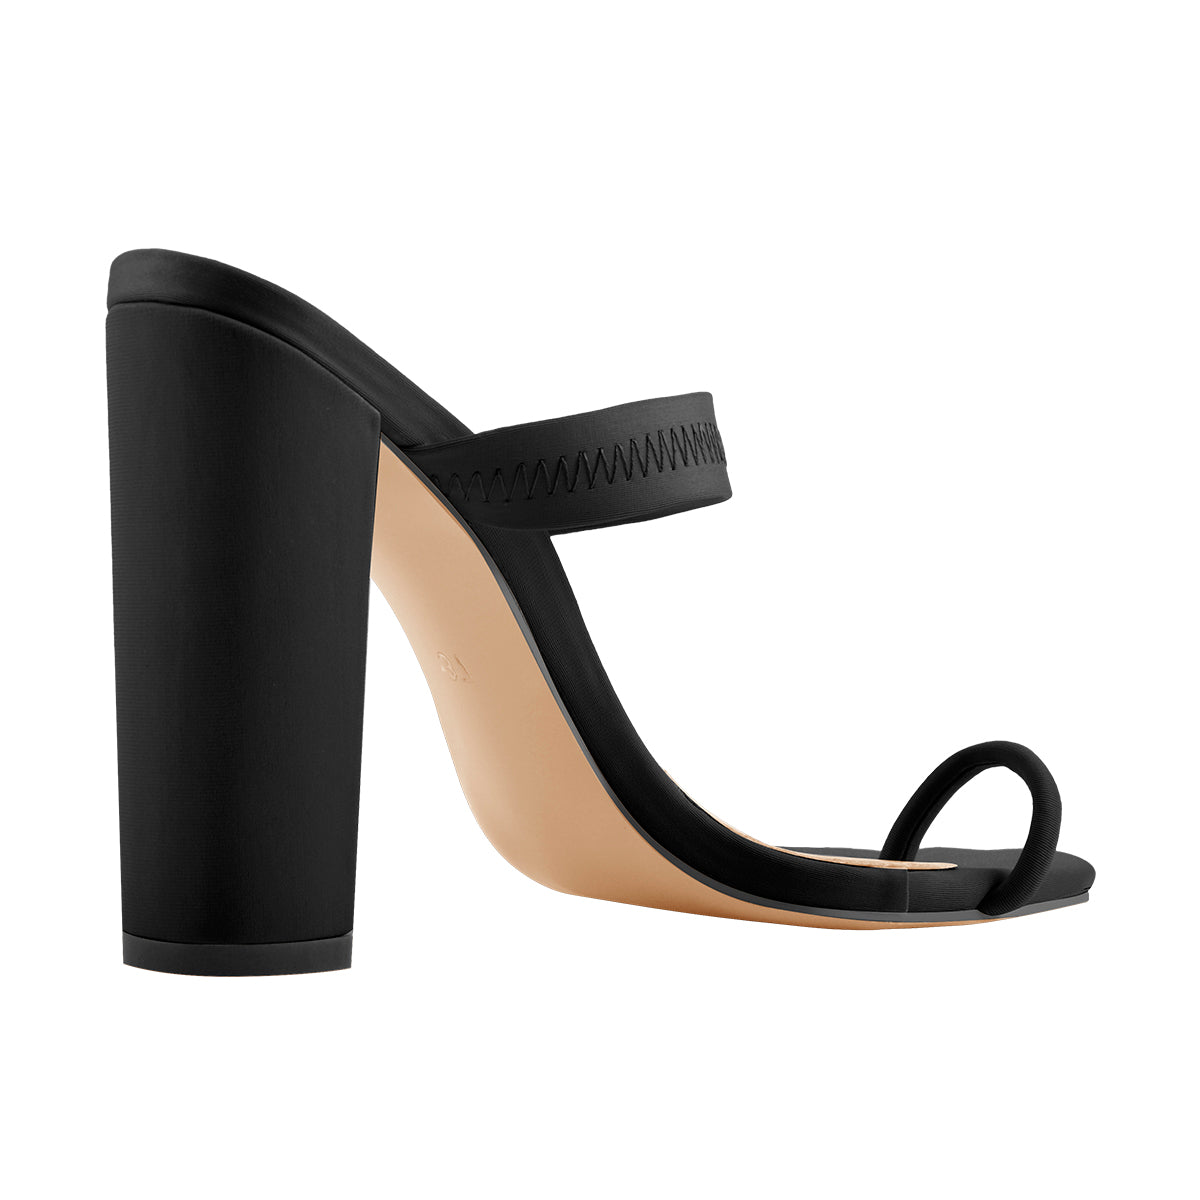 VKEKIEO Toe Ring Heels For Women High Heel Platform Beige - Walmart.com